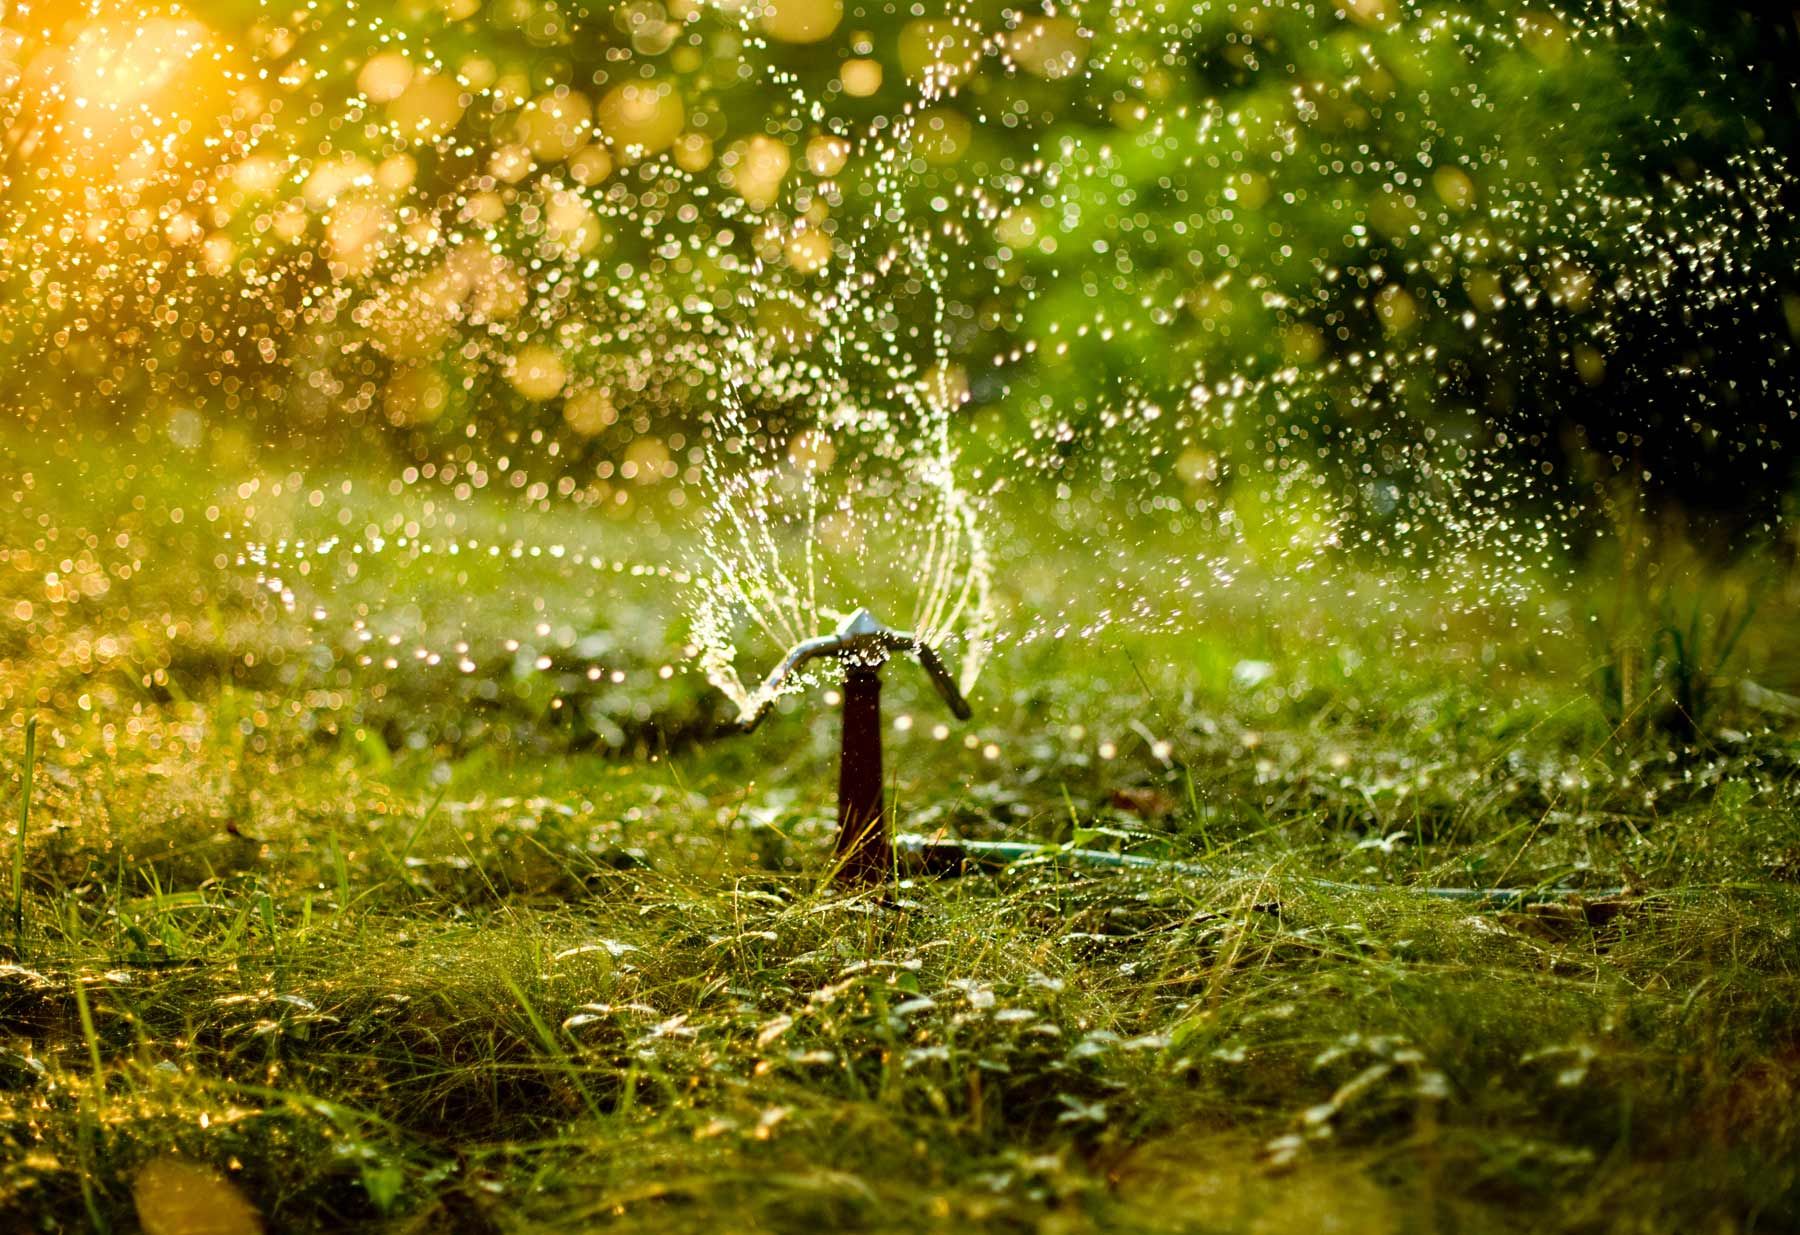 Sprinkler-in-evening-sun.jpg